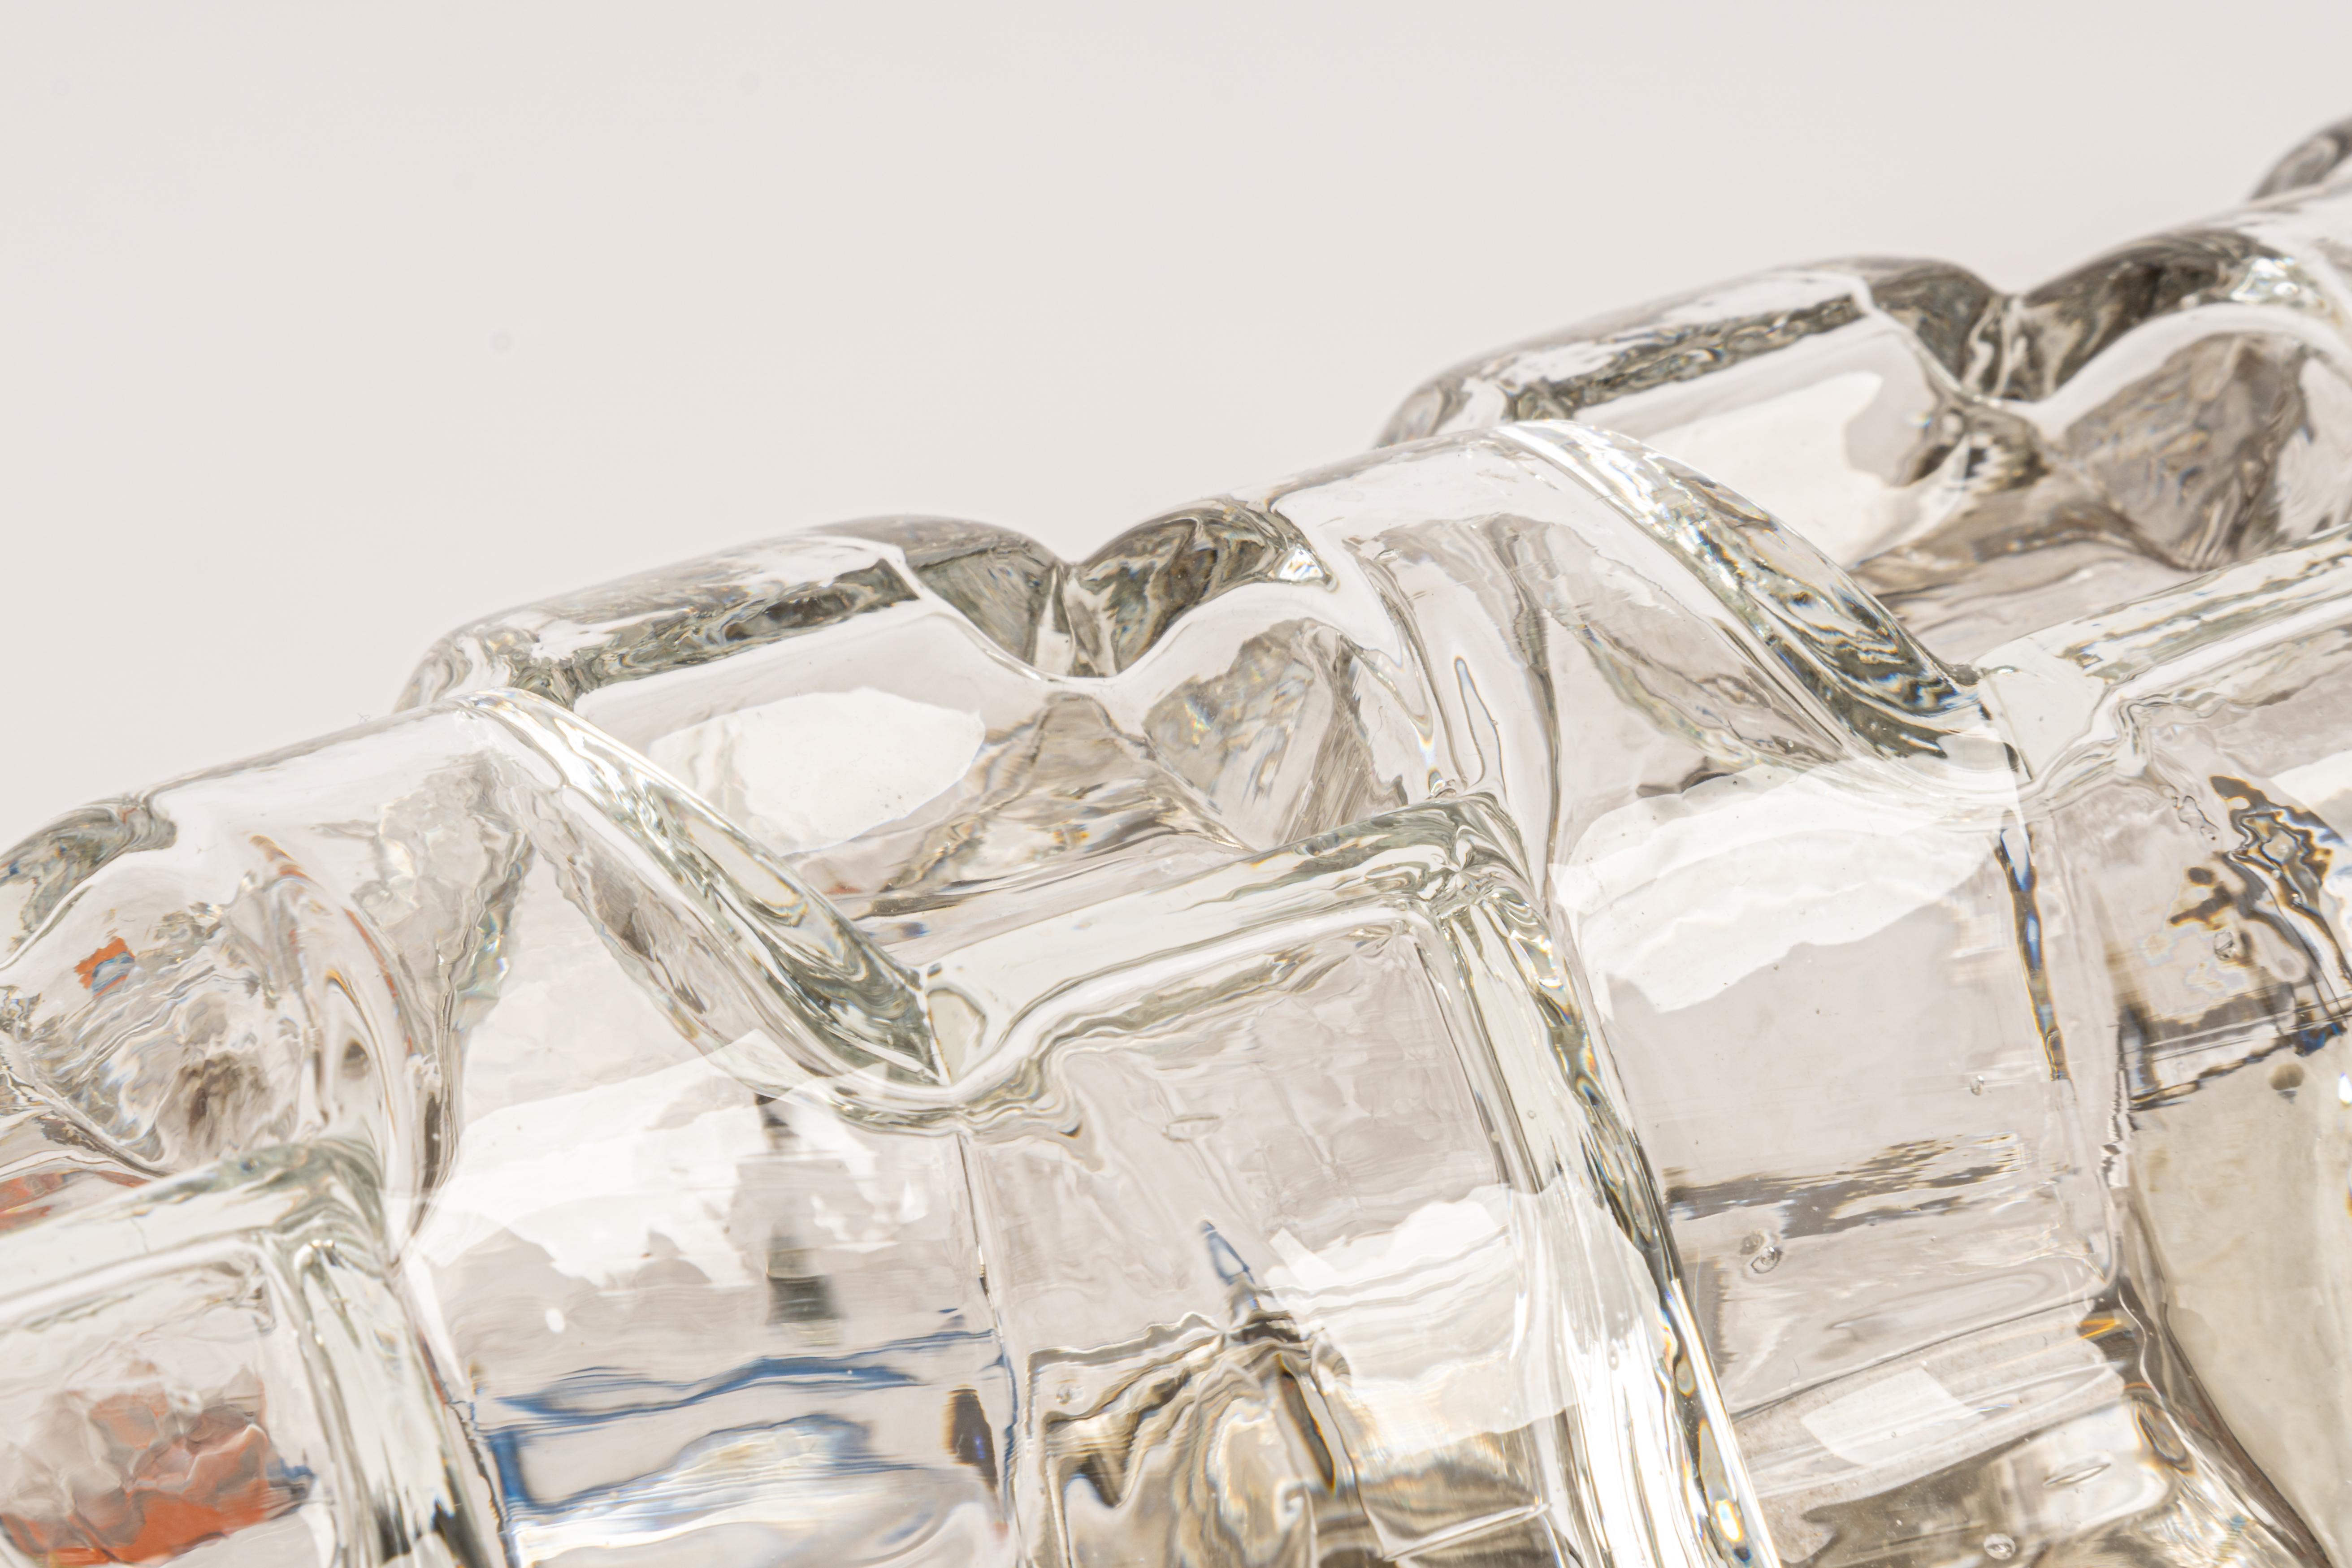 Grandes appliques artisanales en verre sur base chromée par Hillebrand, Allemagne, vers les années 1960.

Elle se compose d'un abat-jour en cristal clair de qualité texturée sur un cadre chromé.

Le design permet de placer ce luminaire à la